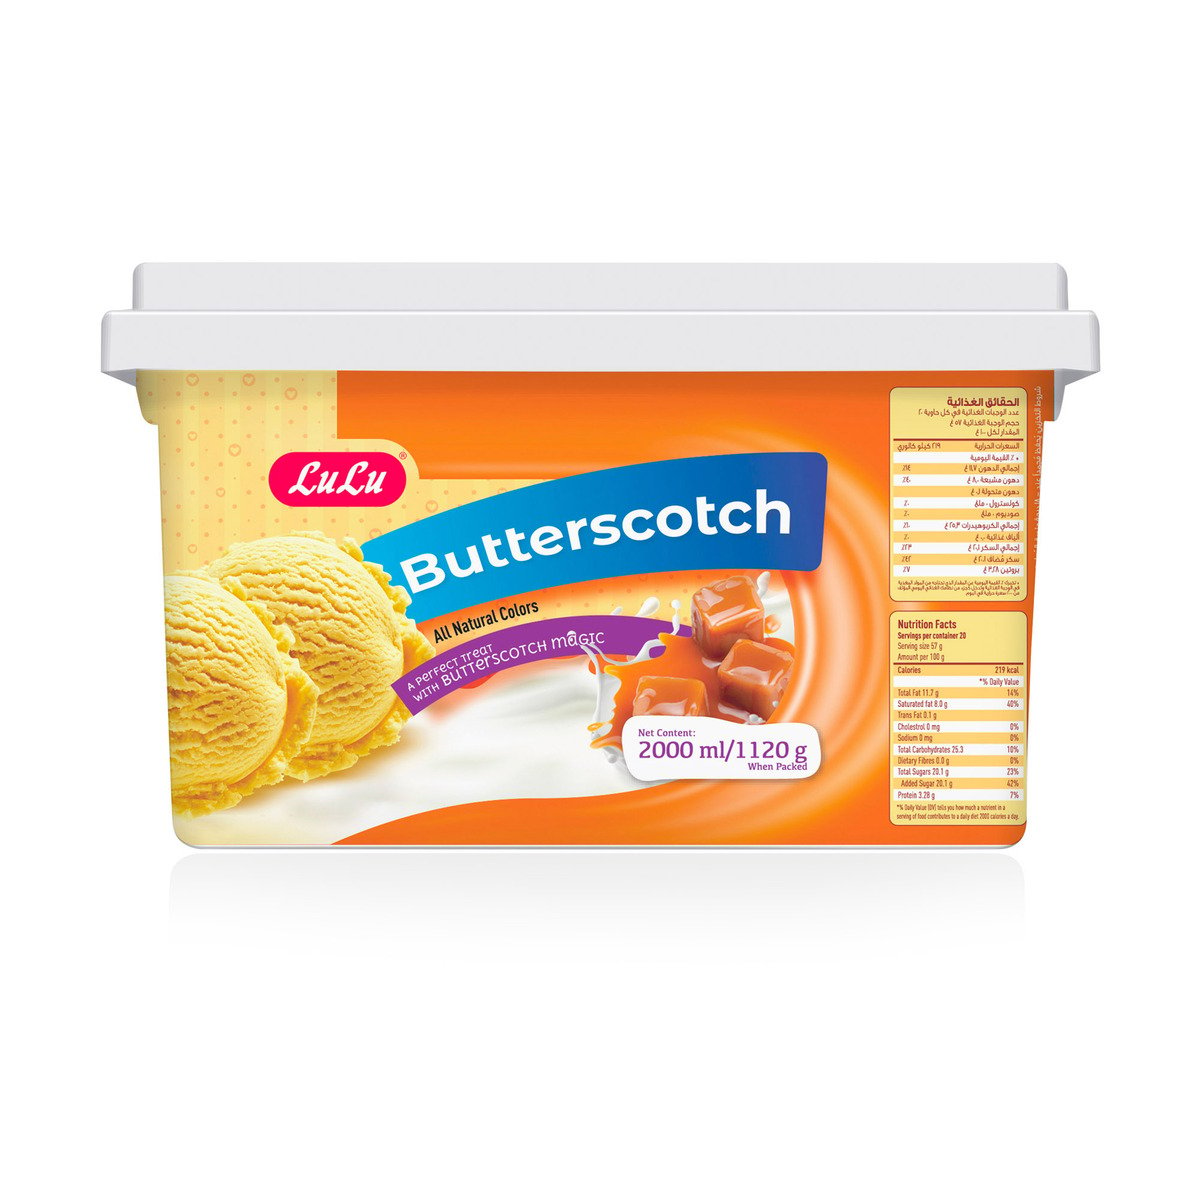 Lulu PL LuLu Butterscotch Ice Cream 2 Litres